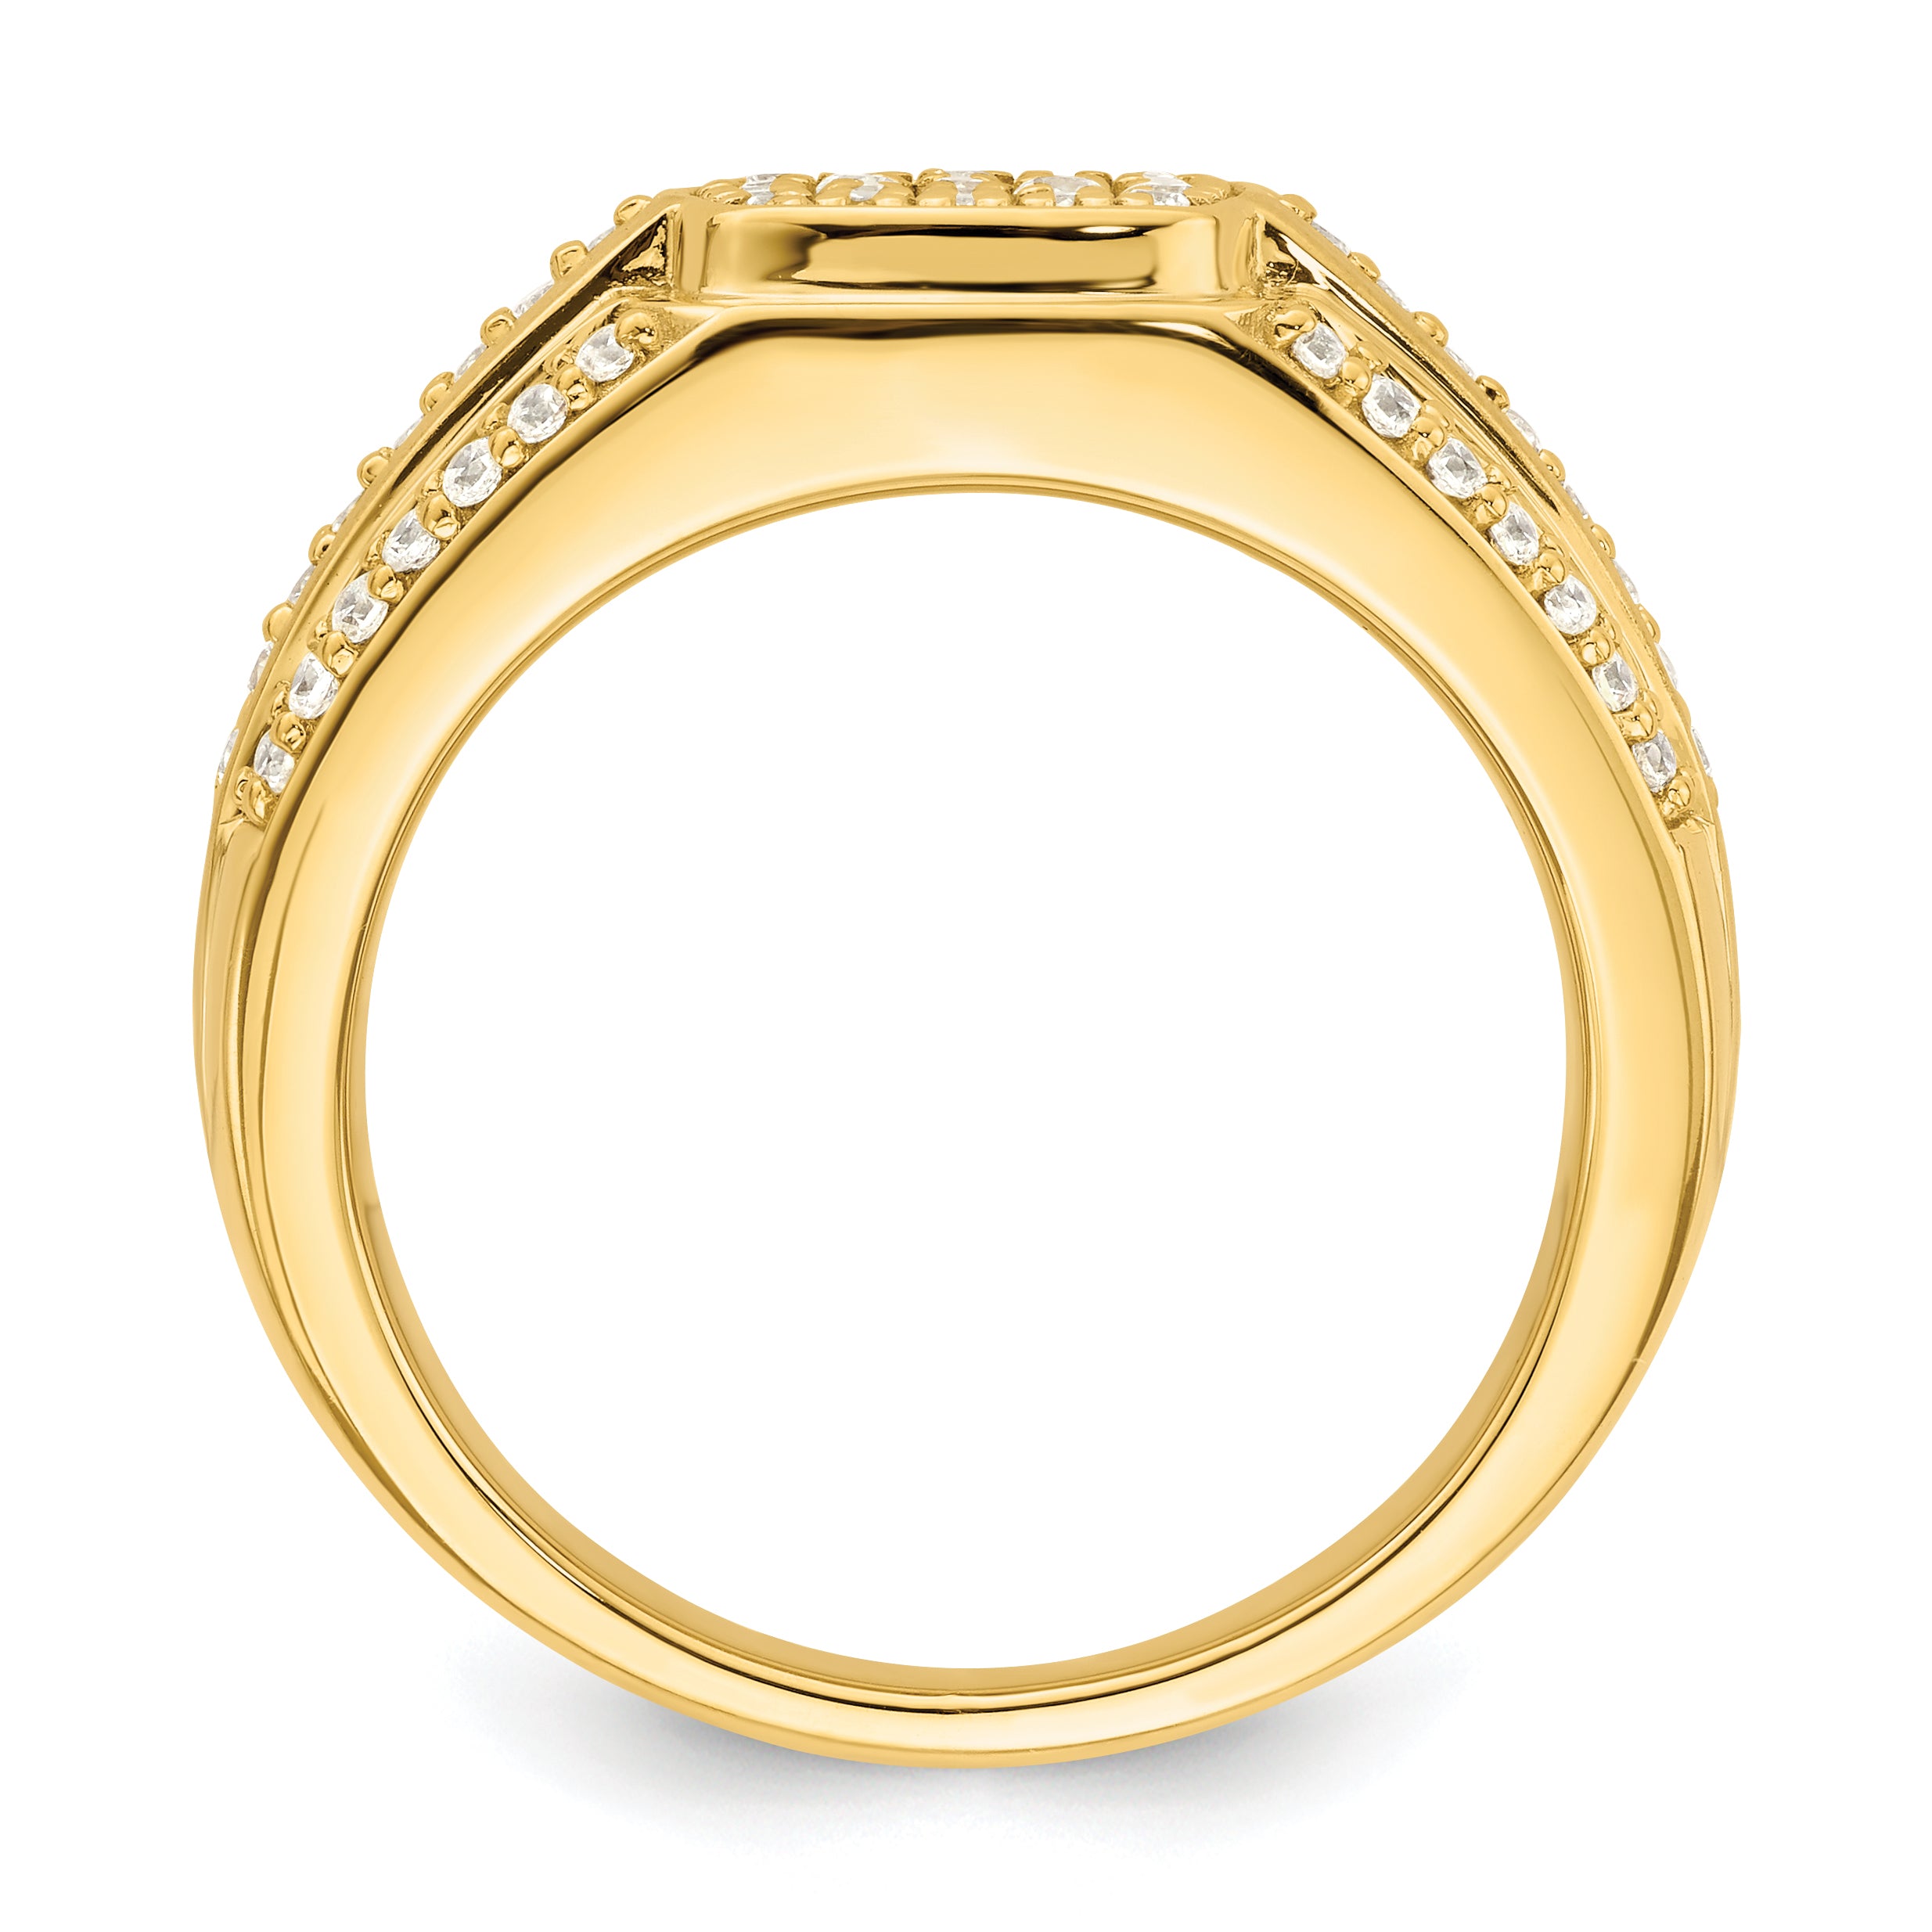 14K Lab Grown Diamond Men's Ring